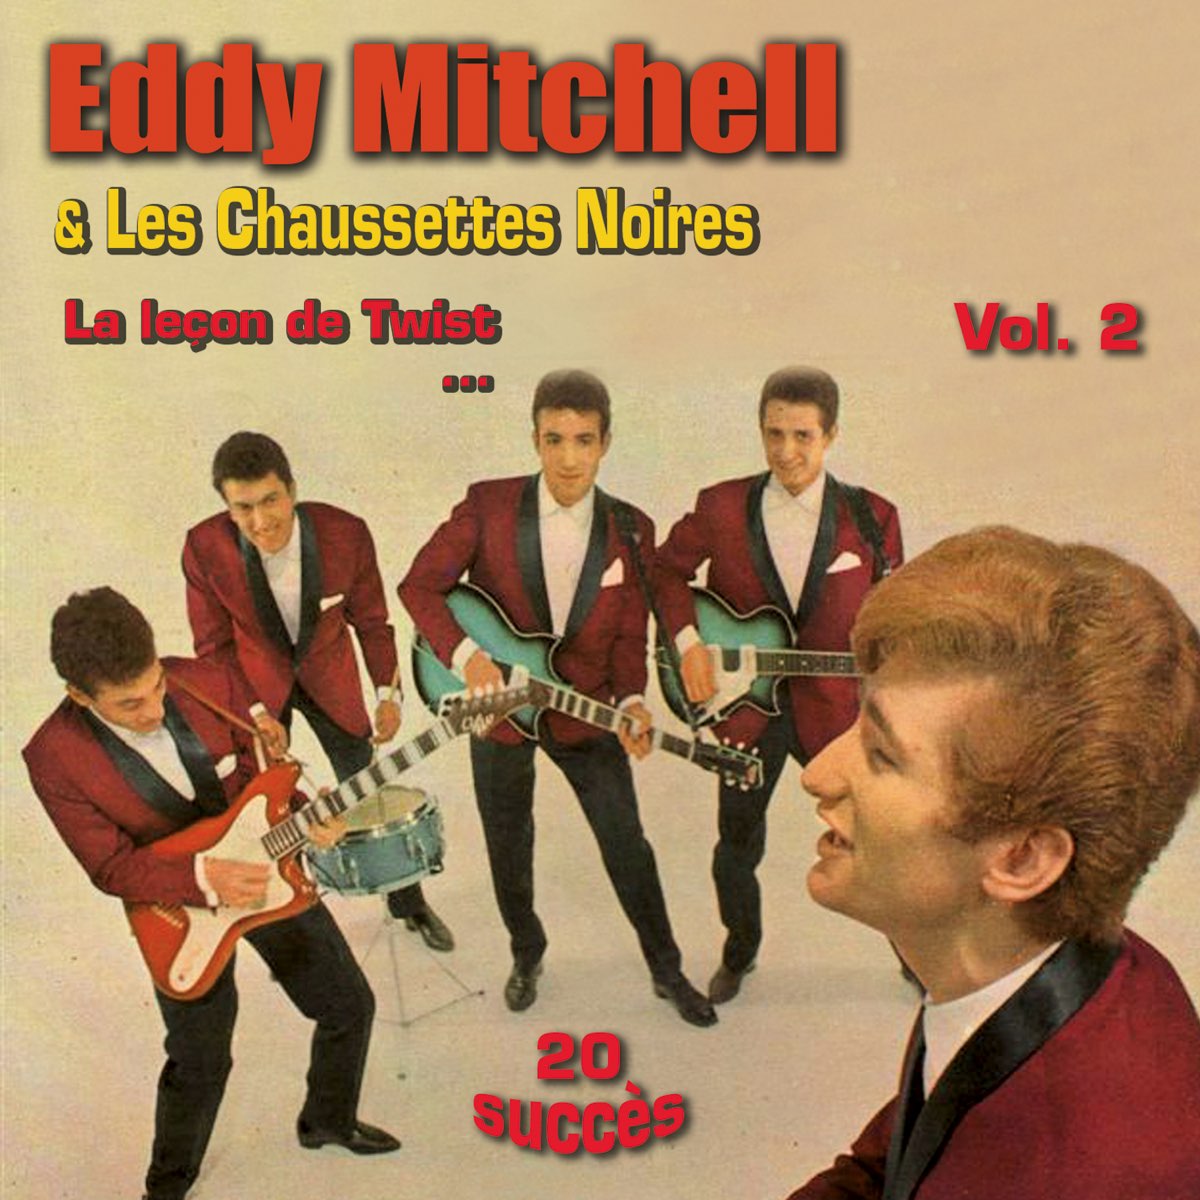 La leçon de twist - Eddy Mitchel & Les chaussettes noires, vol. 2 par Eddy  Mitchell & Les Chaussettes Noires sur Apple Music